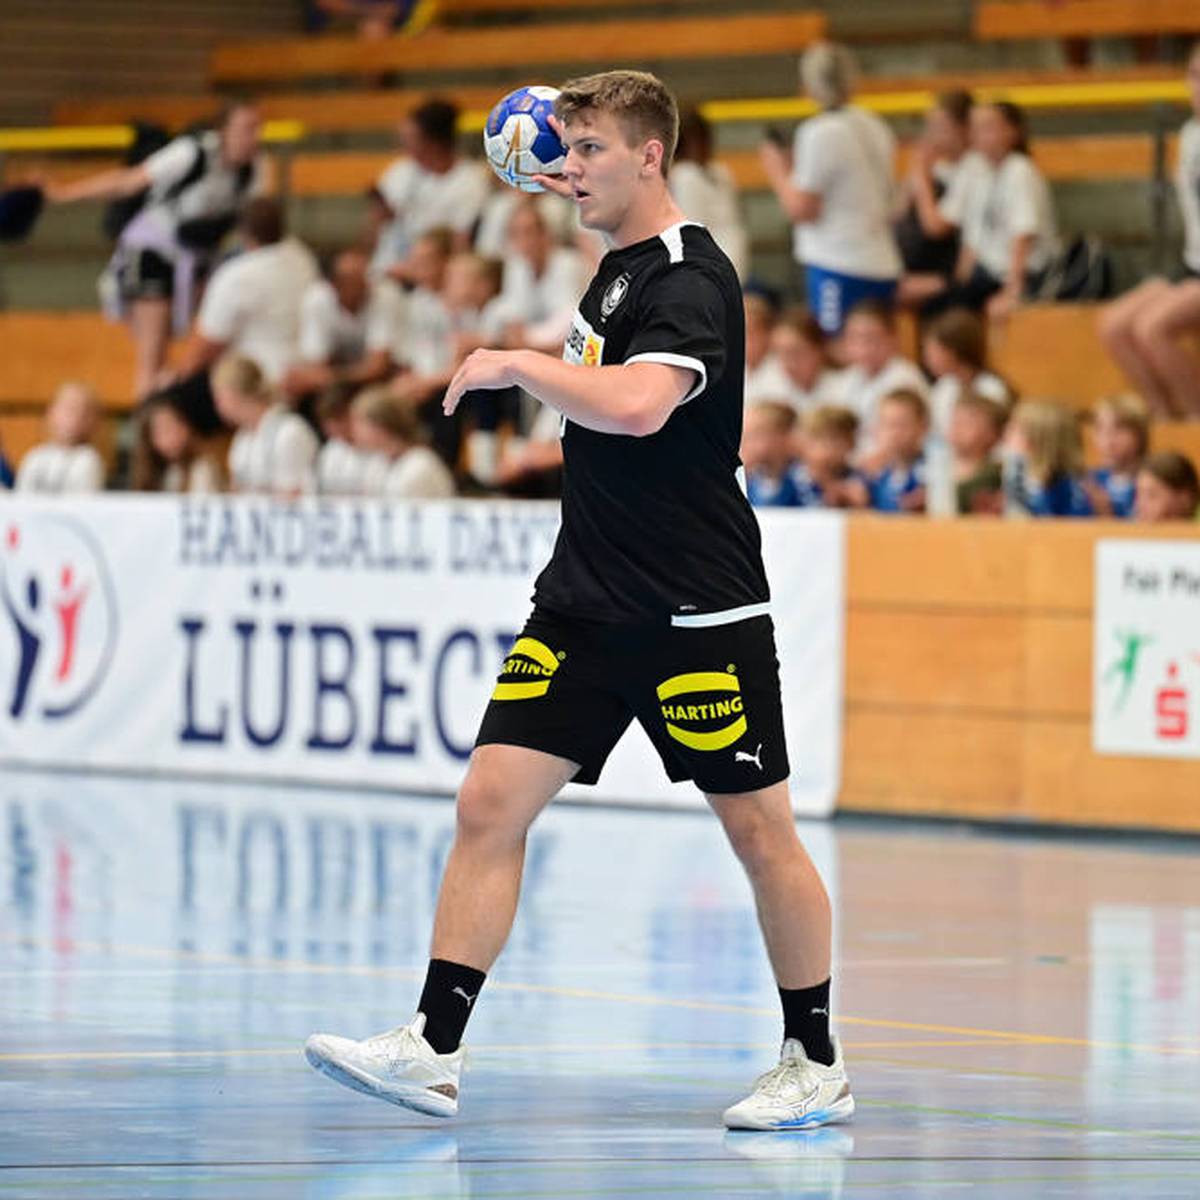 Handball Färöer Inseln zu stark! Deutschland kassiert bittere Pleite bei U19-WM